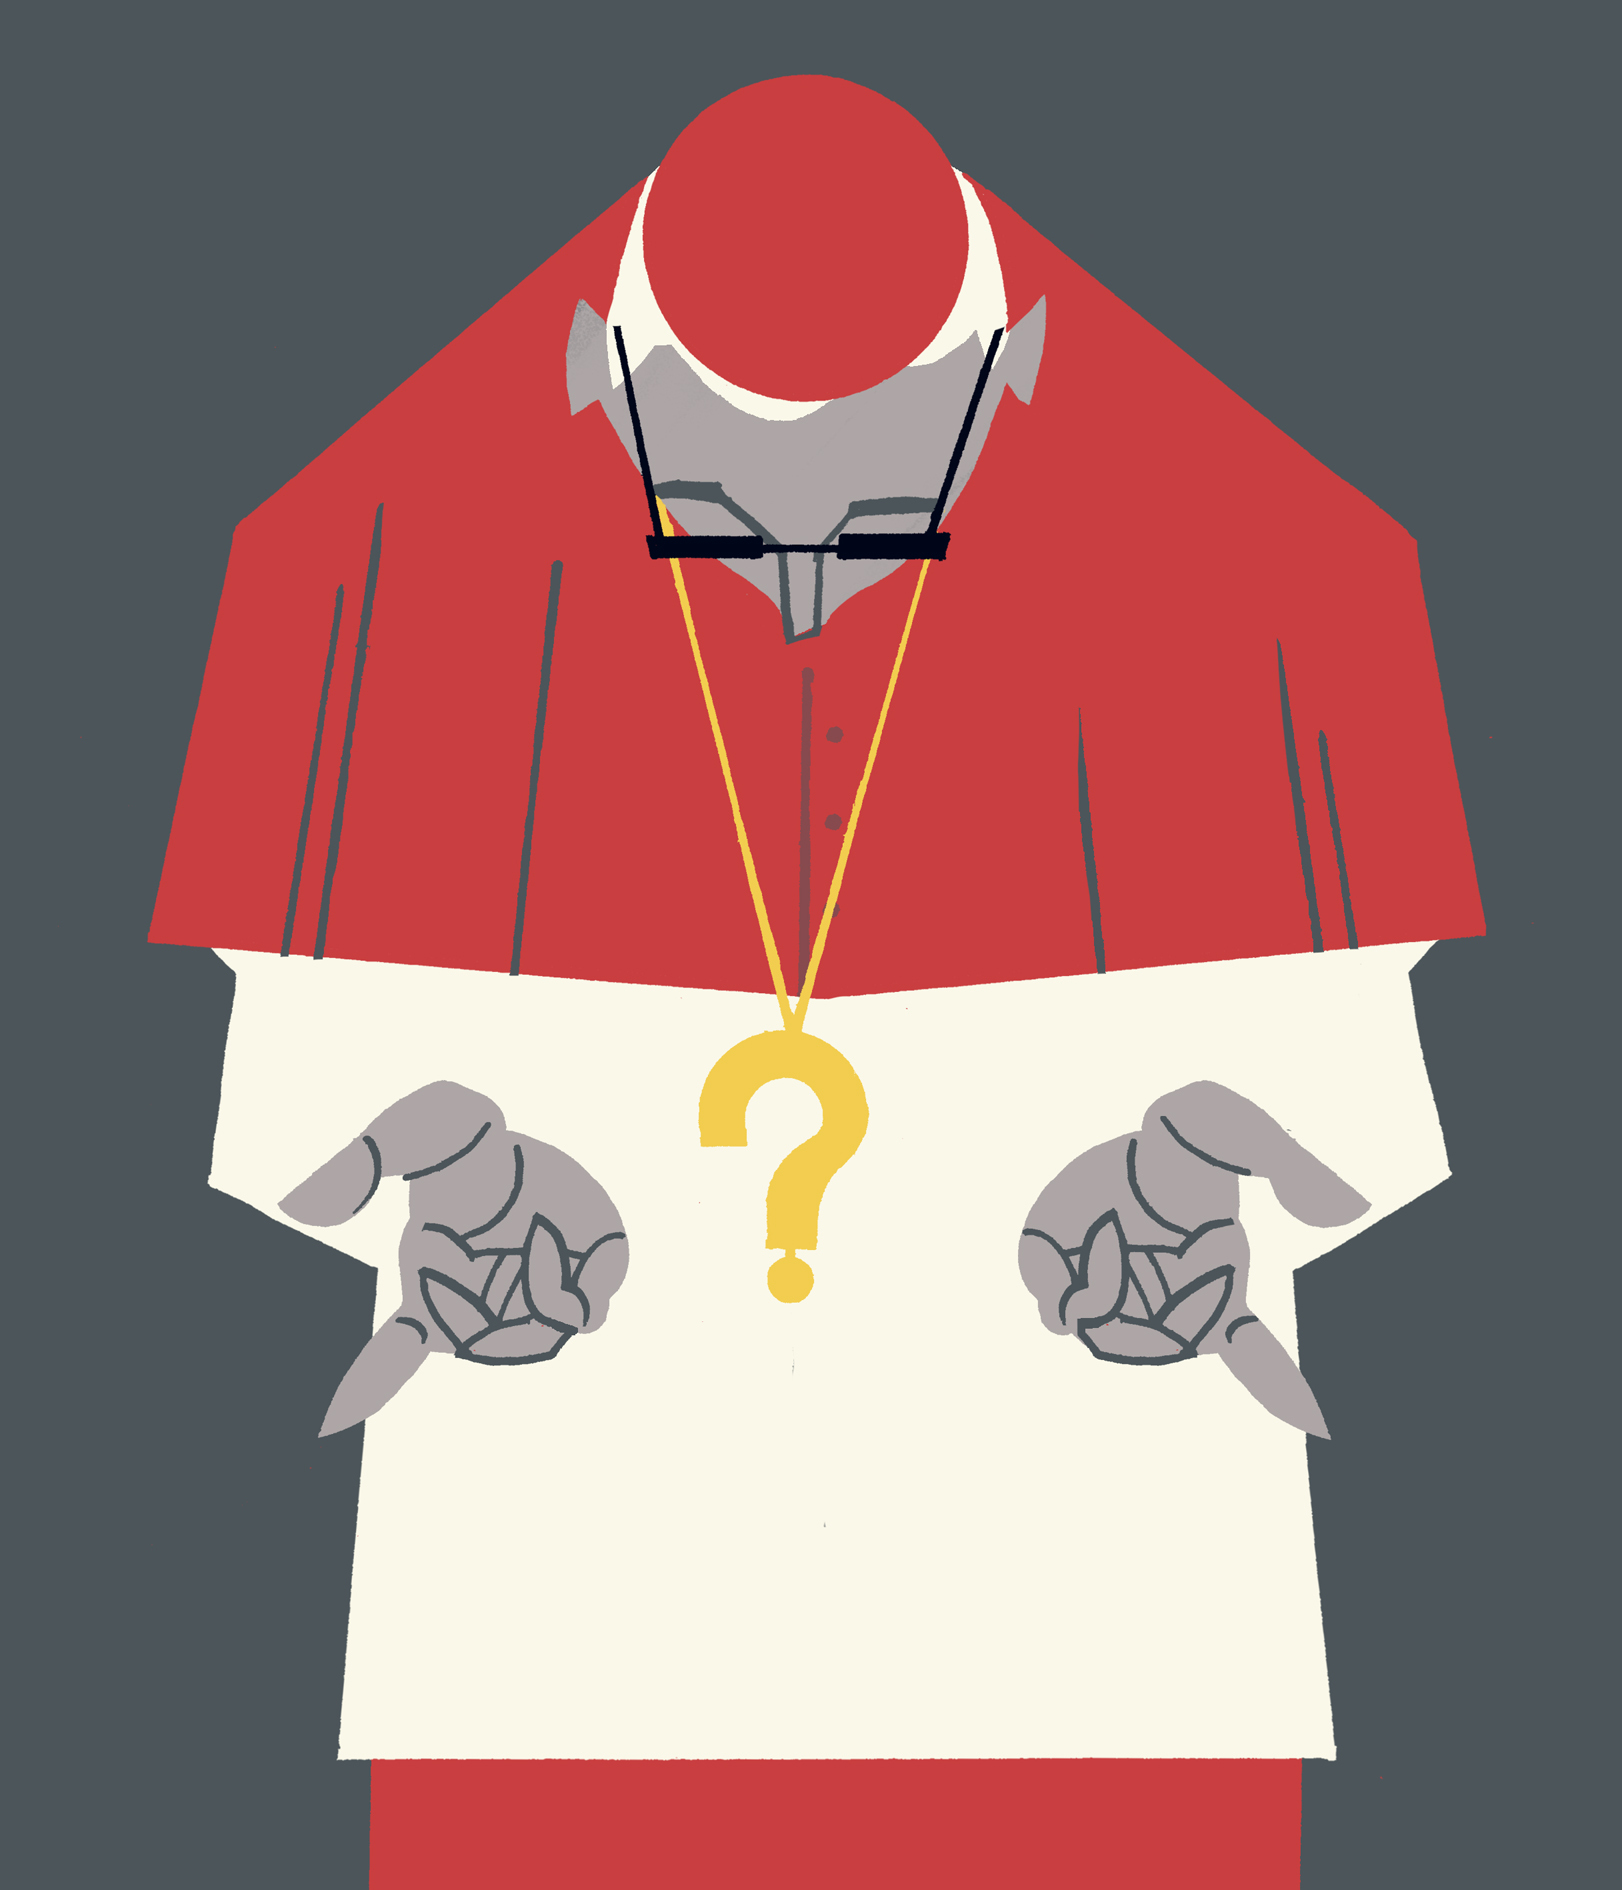 El "estupor" de los cardenales